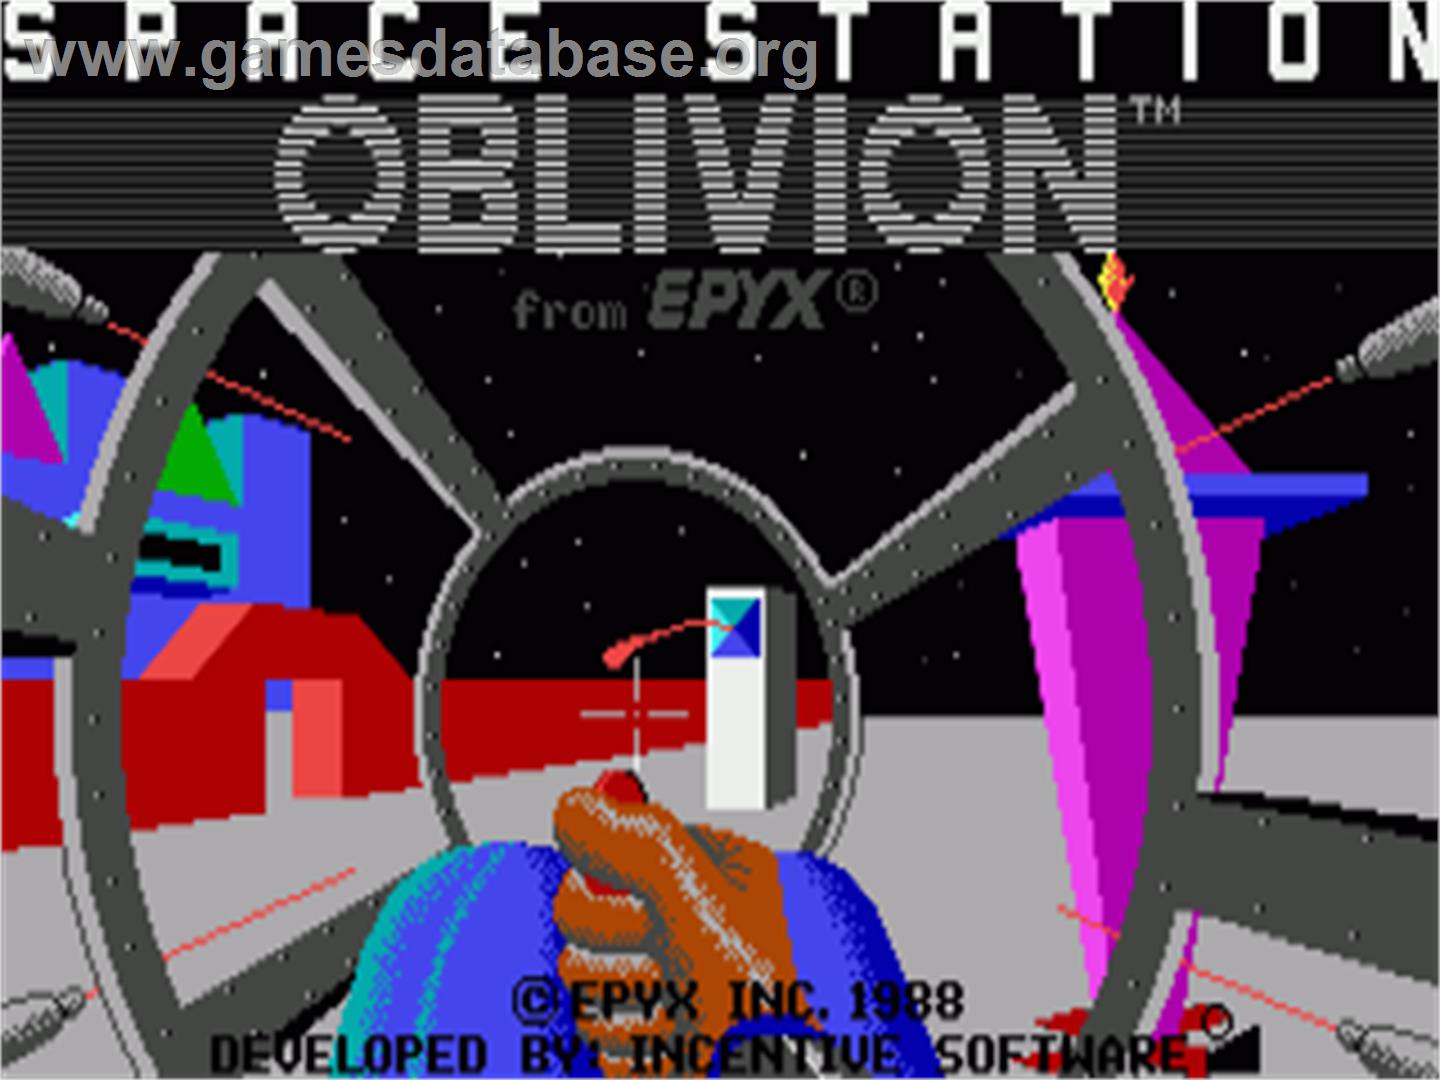 Space Station Oblivion - Commodore Amiga - Artwork - Title Screen